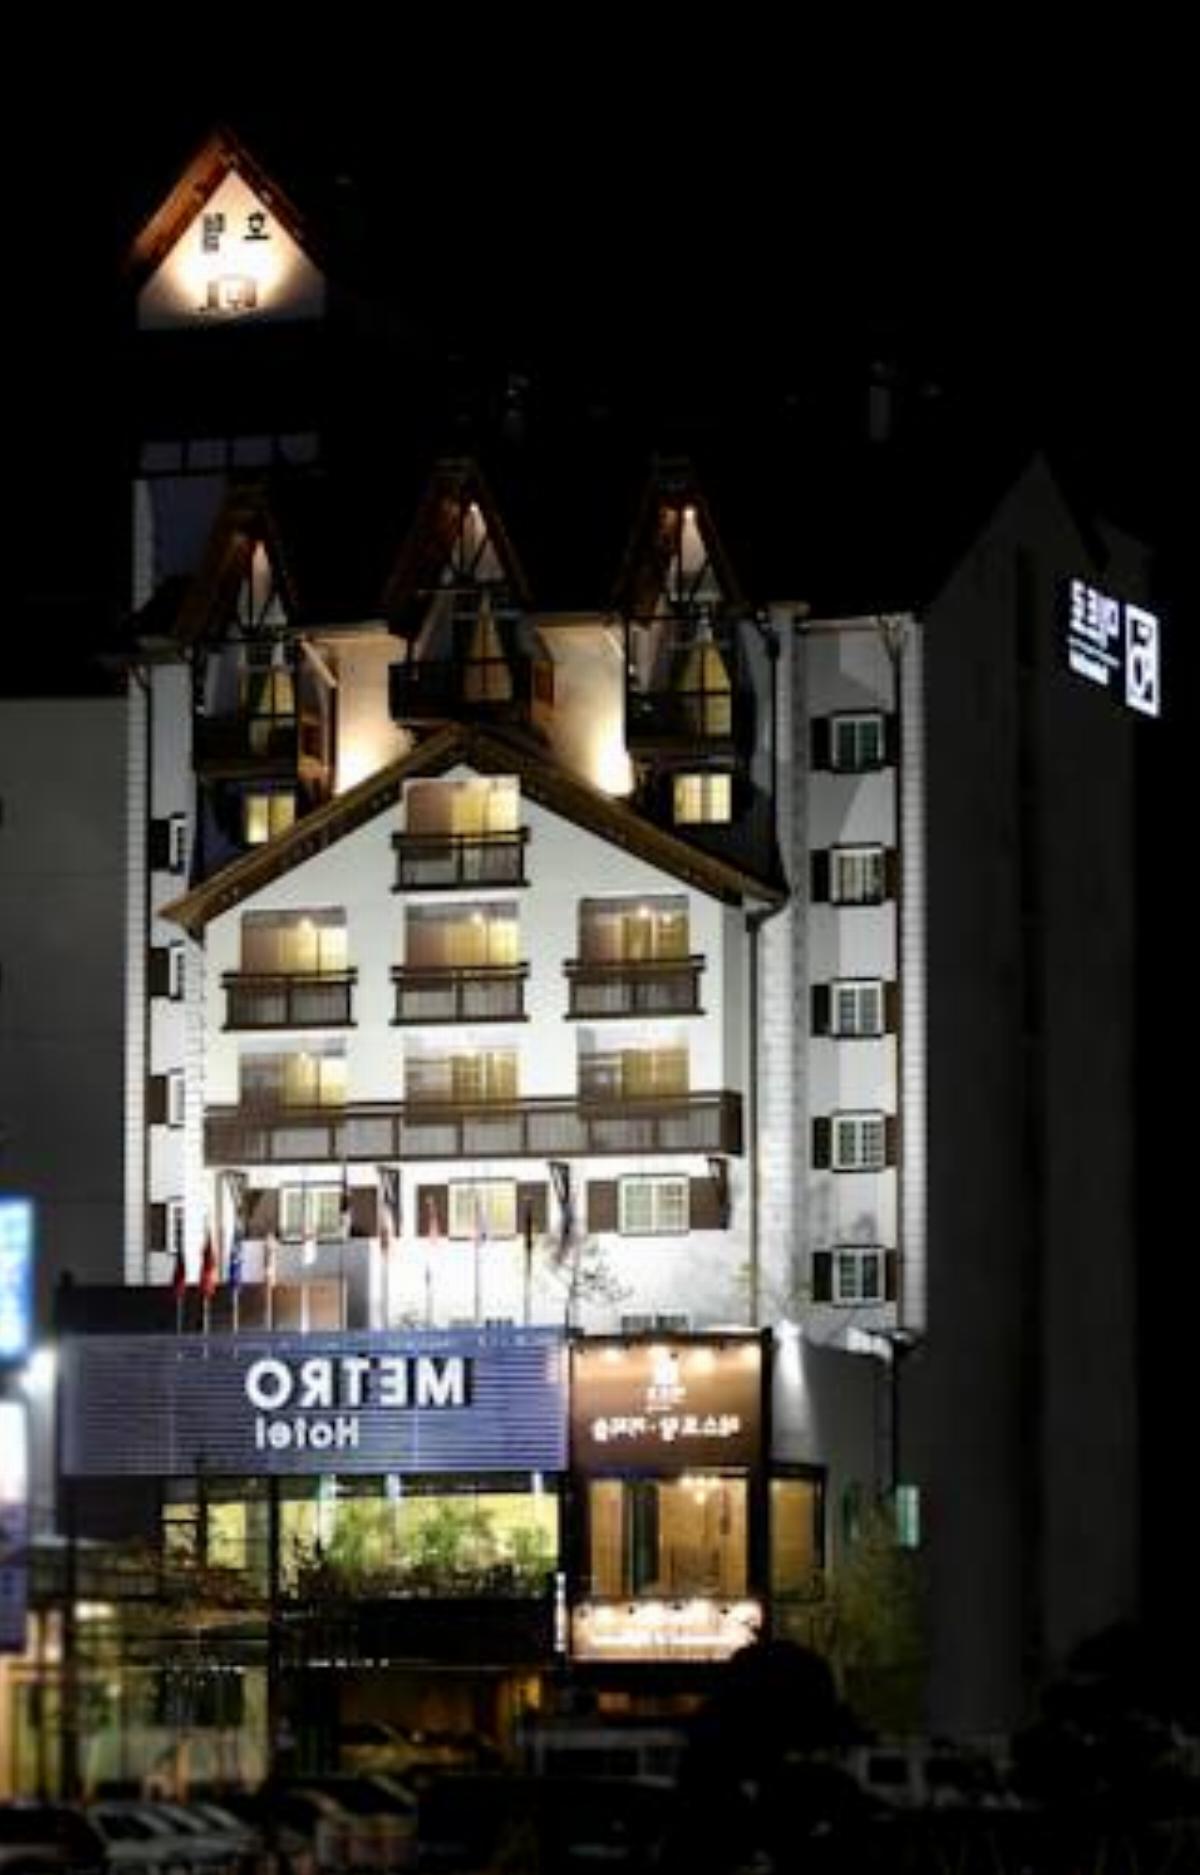 Cheonan Metro Tourist Hotel Hotel Cheonan South Korea